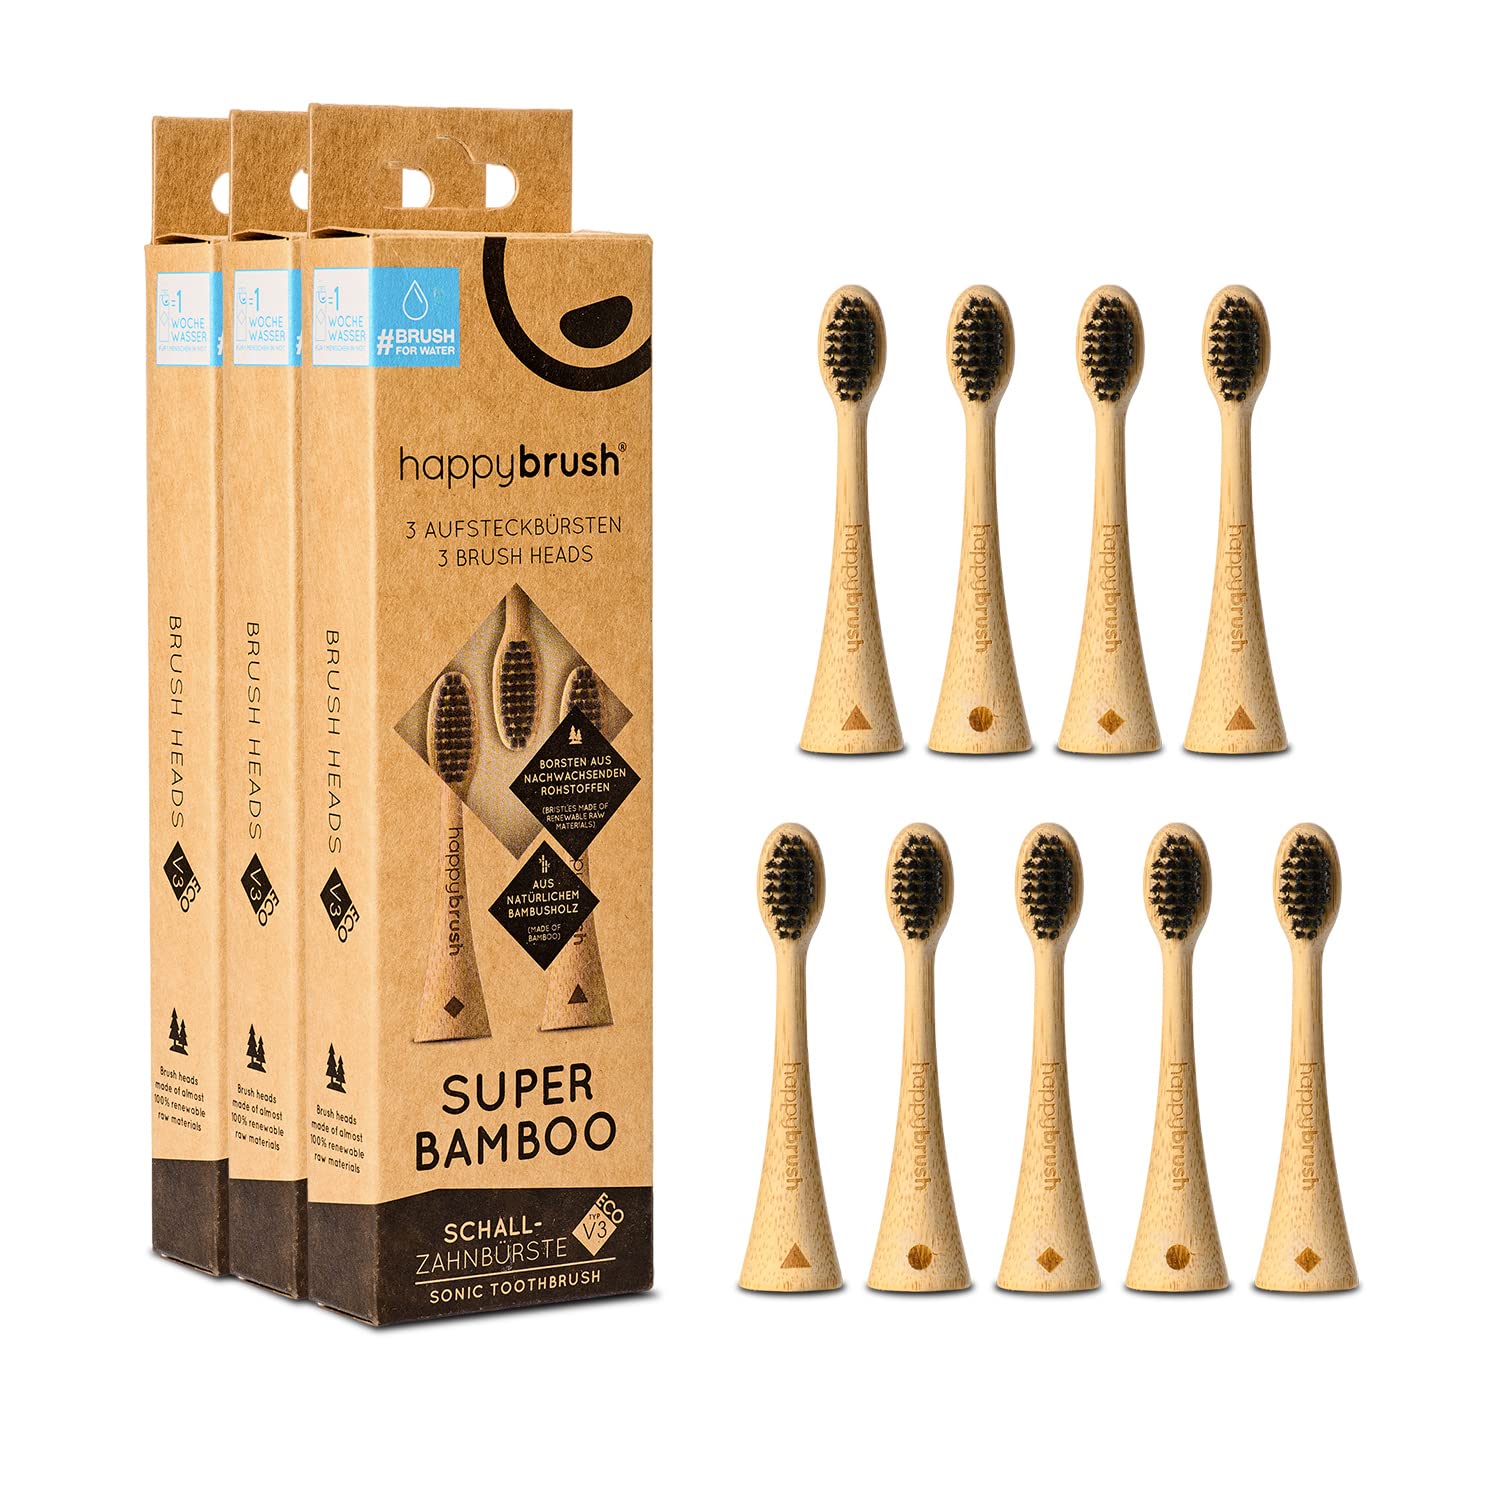 happybrush® Nachhaltige Aufsteckbürsten aus Bambus für elektrische Schall-Zahnbürste Eco VIBE 3 - Sensitiv bei empfindlichen Zähnen und Zahnfleisch - 3x3 Stück